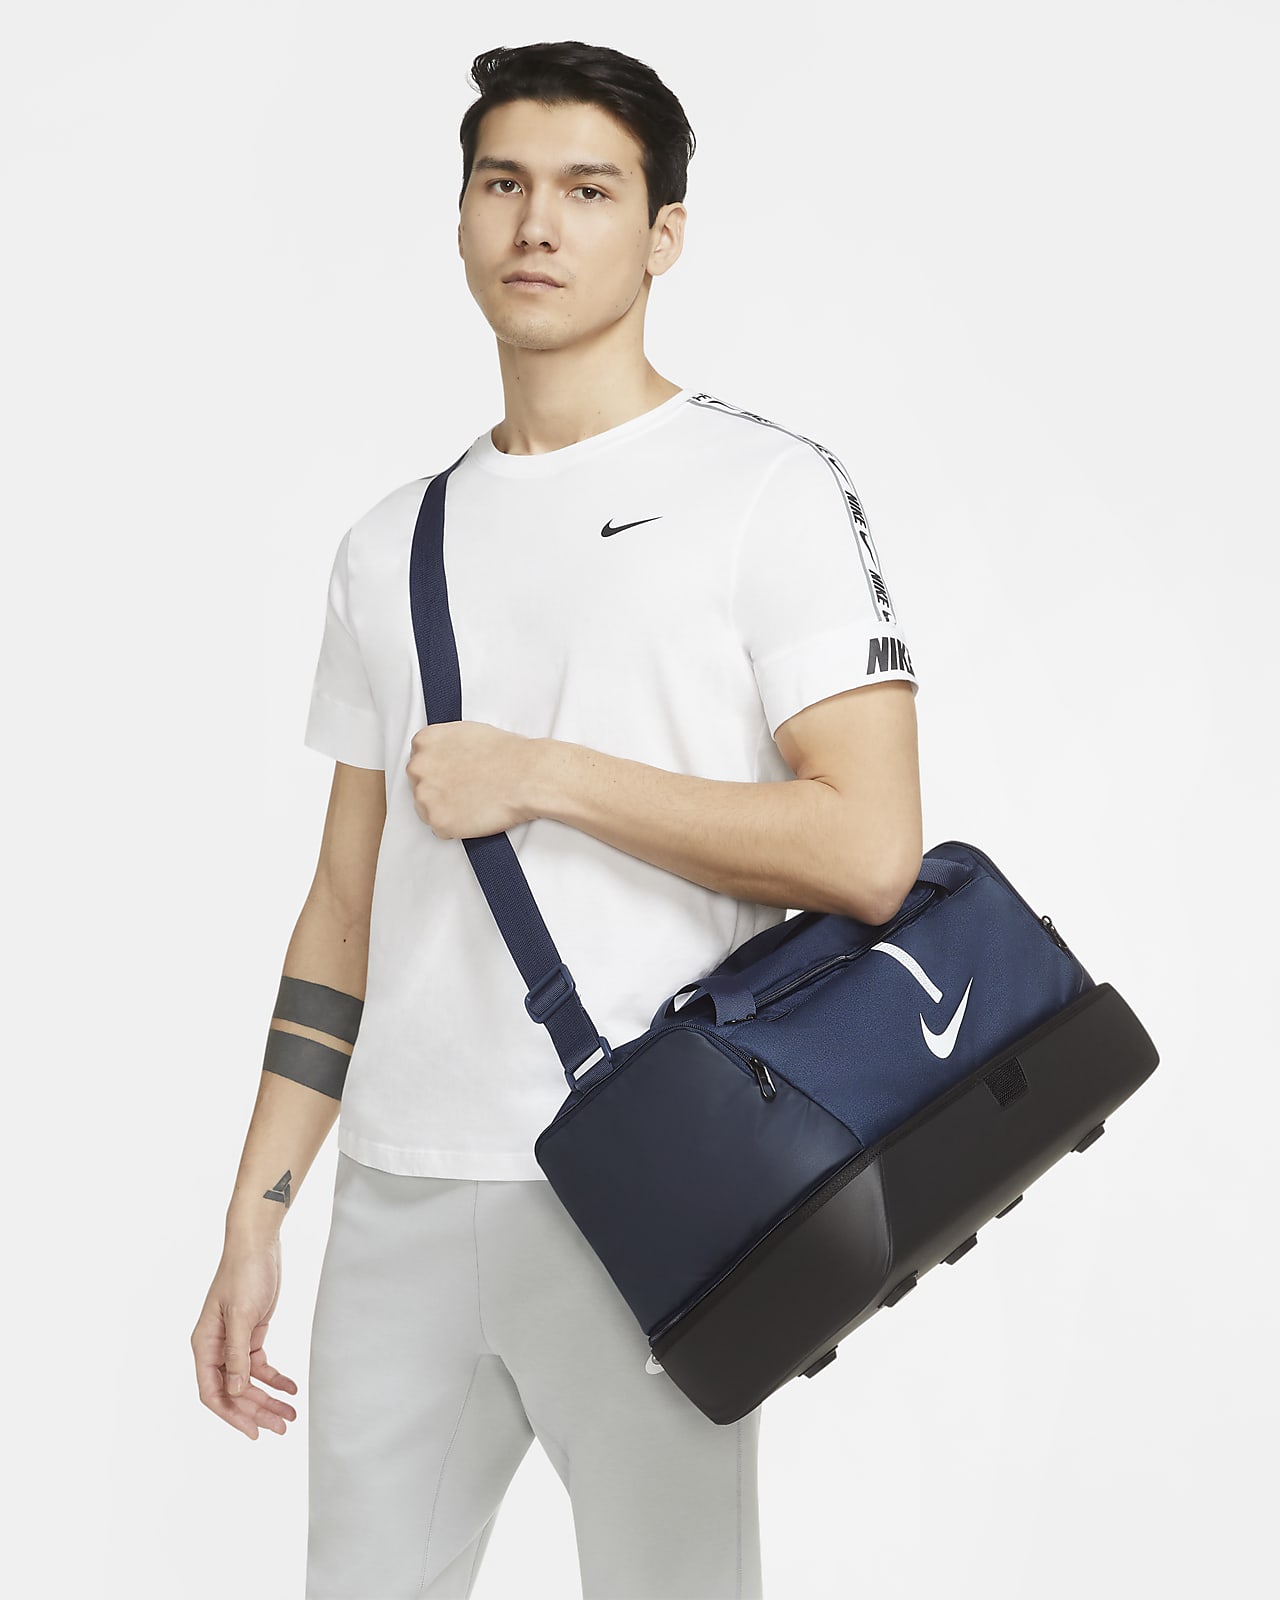 Τσάντα γυμναστηρίου για ποδόσφαιρο με σκληρή βάση Nike Academy Team (μέγεθος Medium, 37 L)